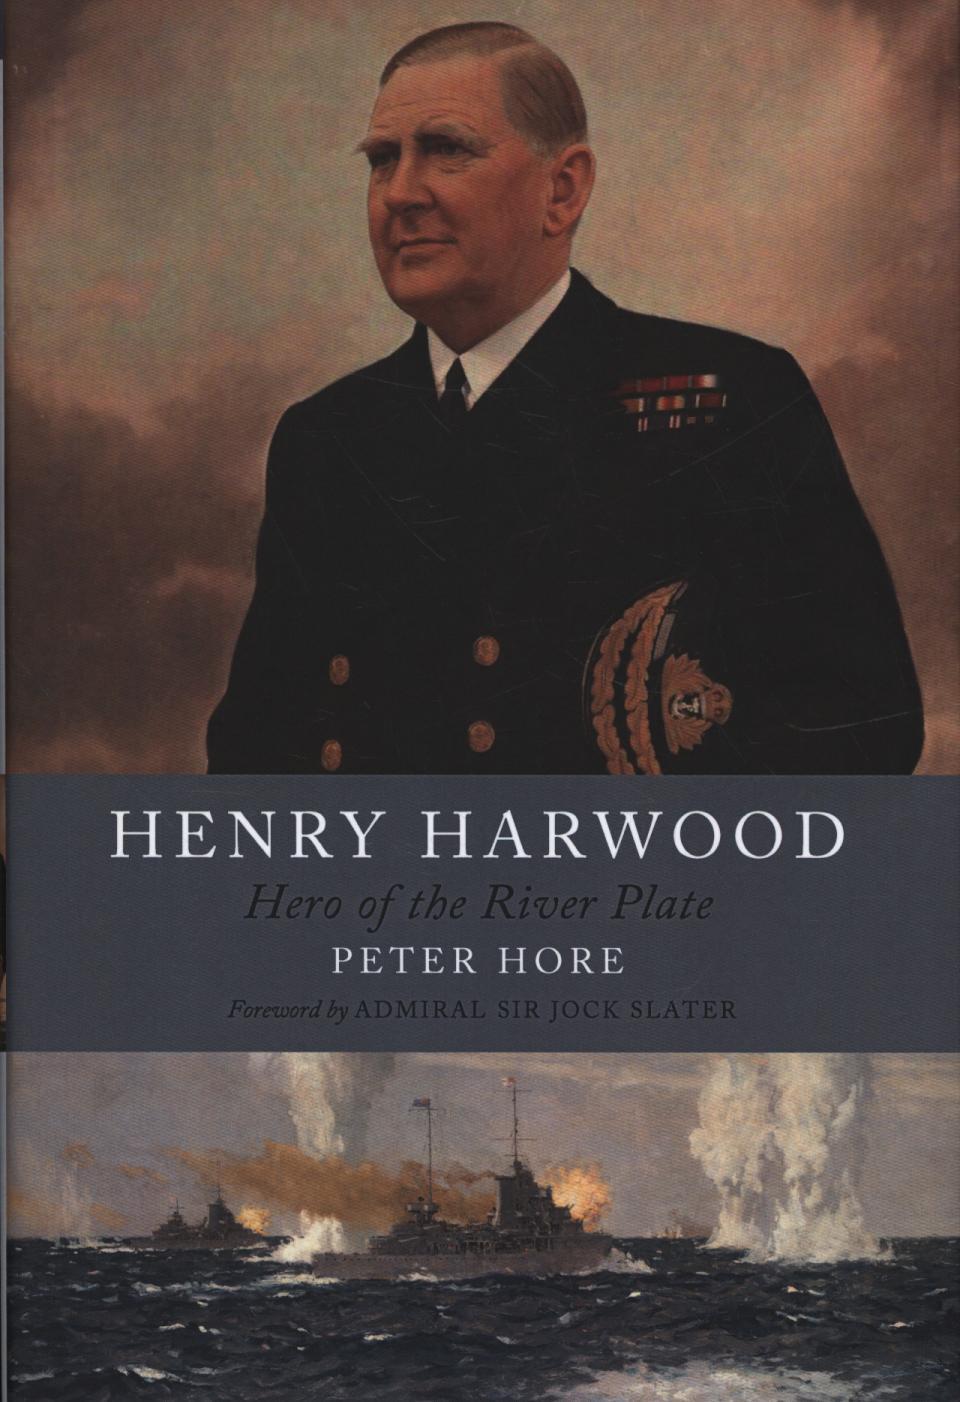 Henry Harwood